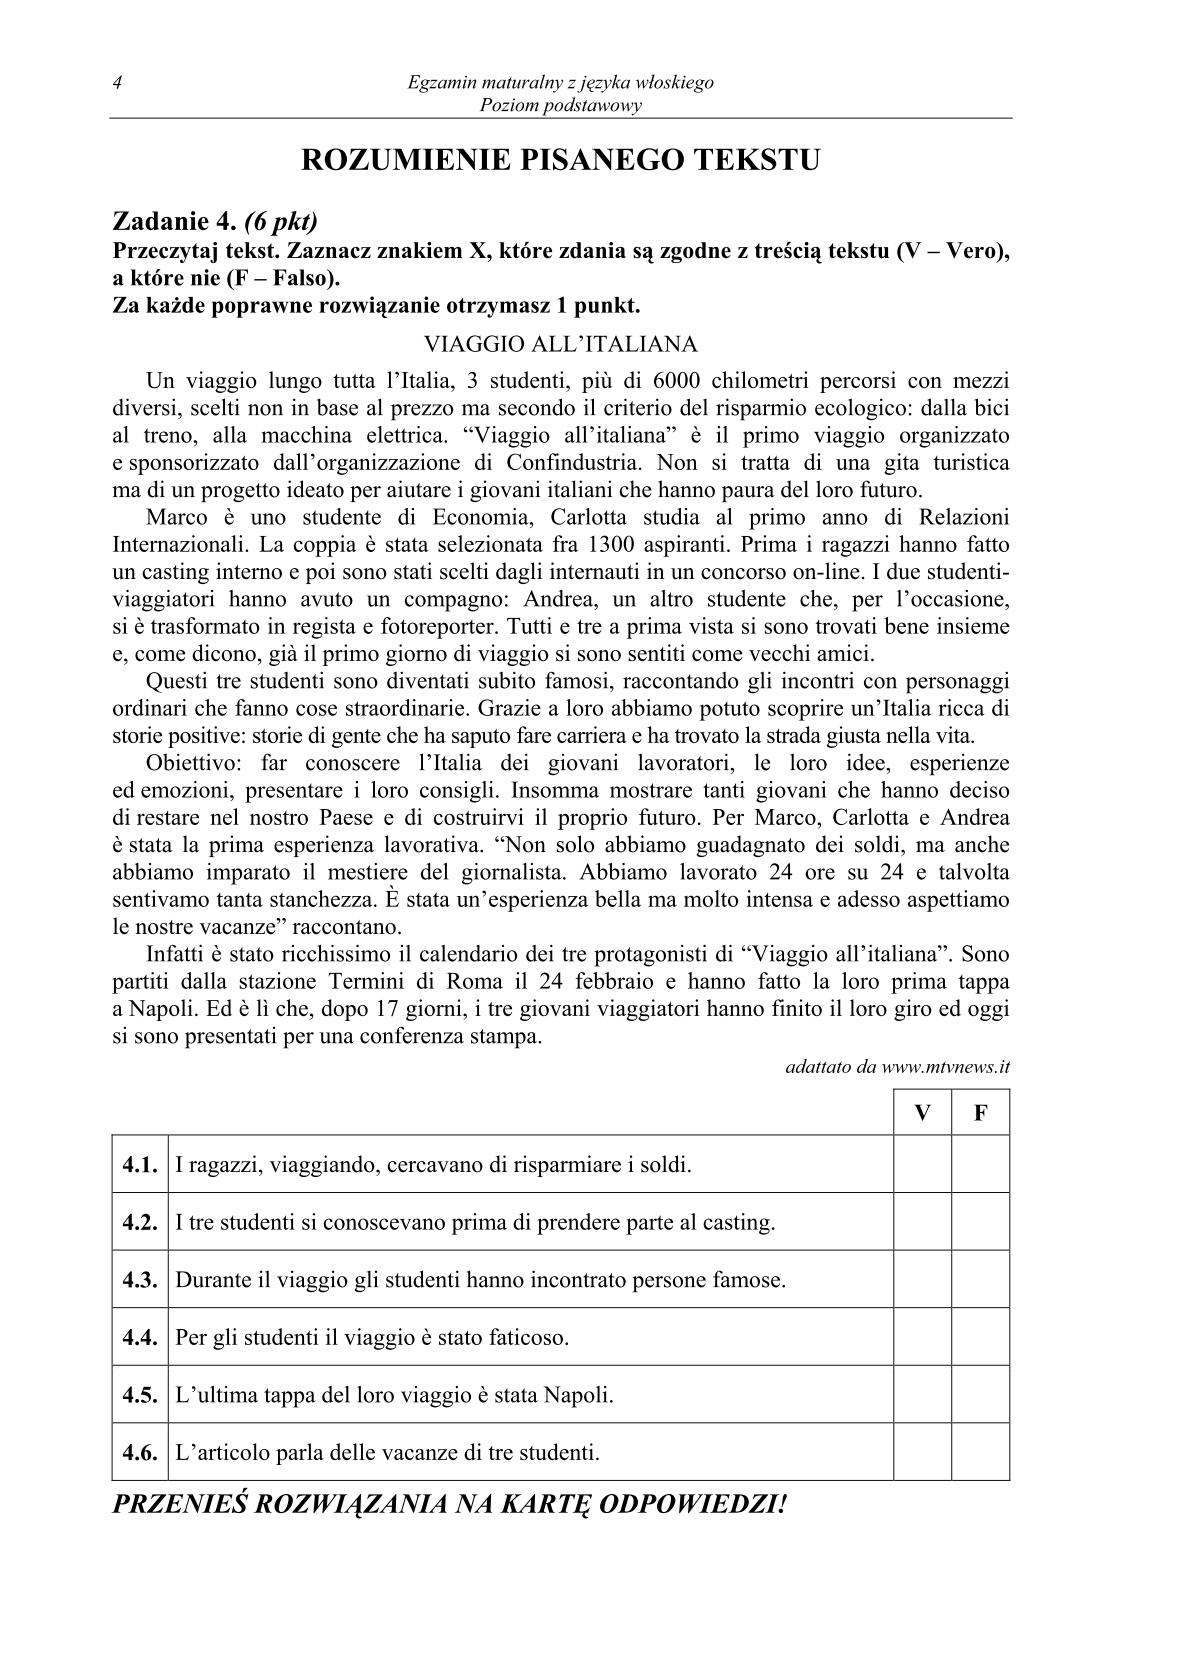 pytania-wloski-poziom-podstawowy-matura-2014-str.4